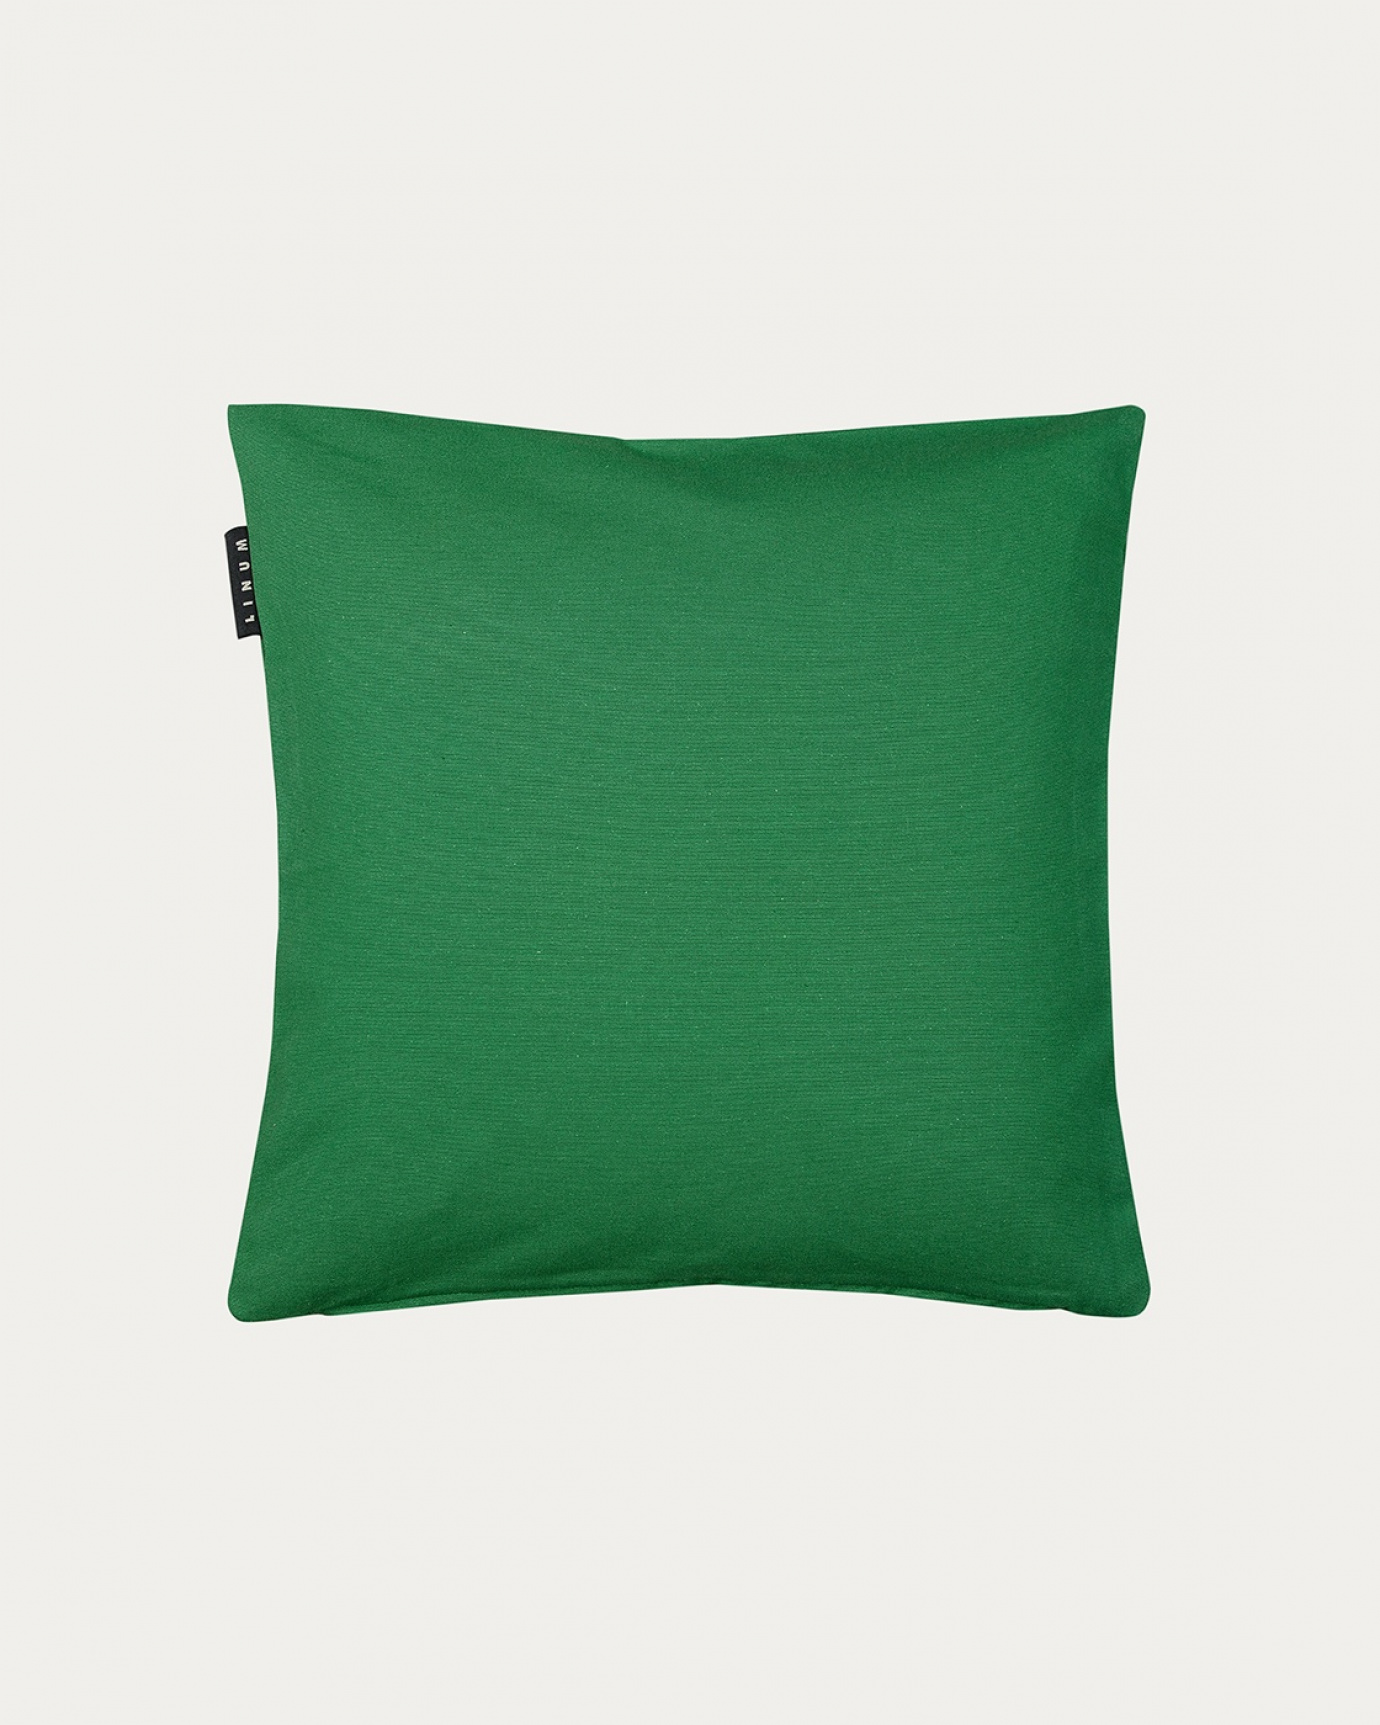 Immagine prodotto verde prato ANNABELL copricuscini in morbido cotone di LINUM DESIGN. Dimensioni 40x40 cm.